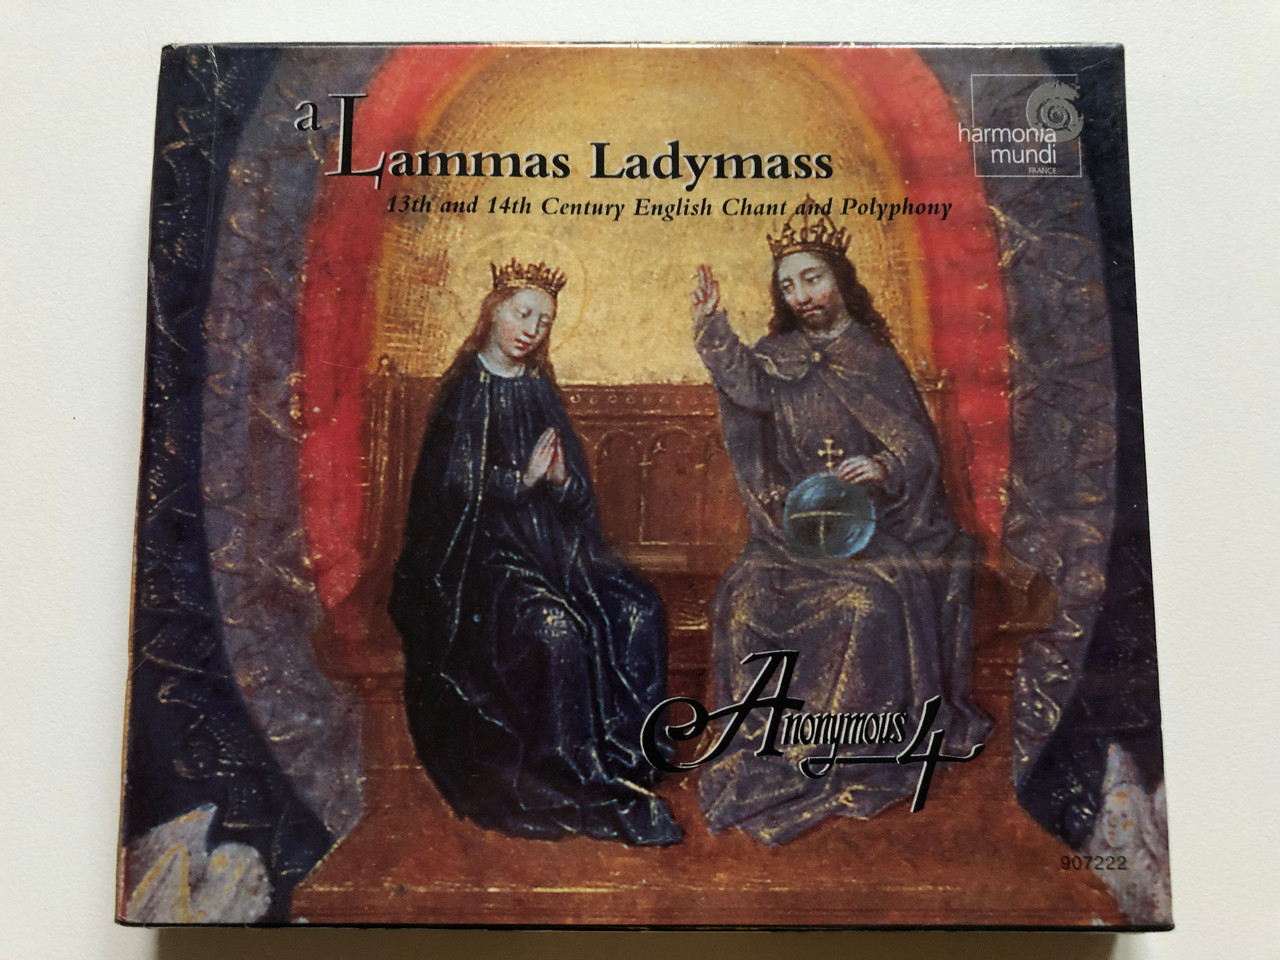 A Lammas Ladymass - Anonymous 4 / 13th and 14th Century English Chant and  Polyphony / Harmonia Mundi Audio CD / HMU 907222 - bibleinmylanguage